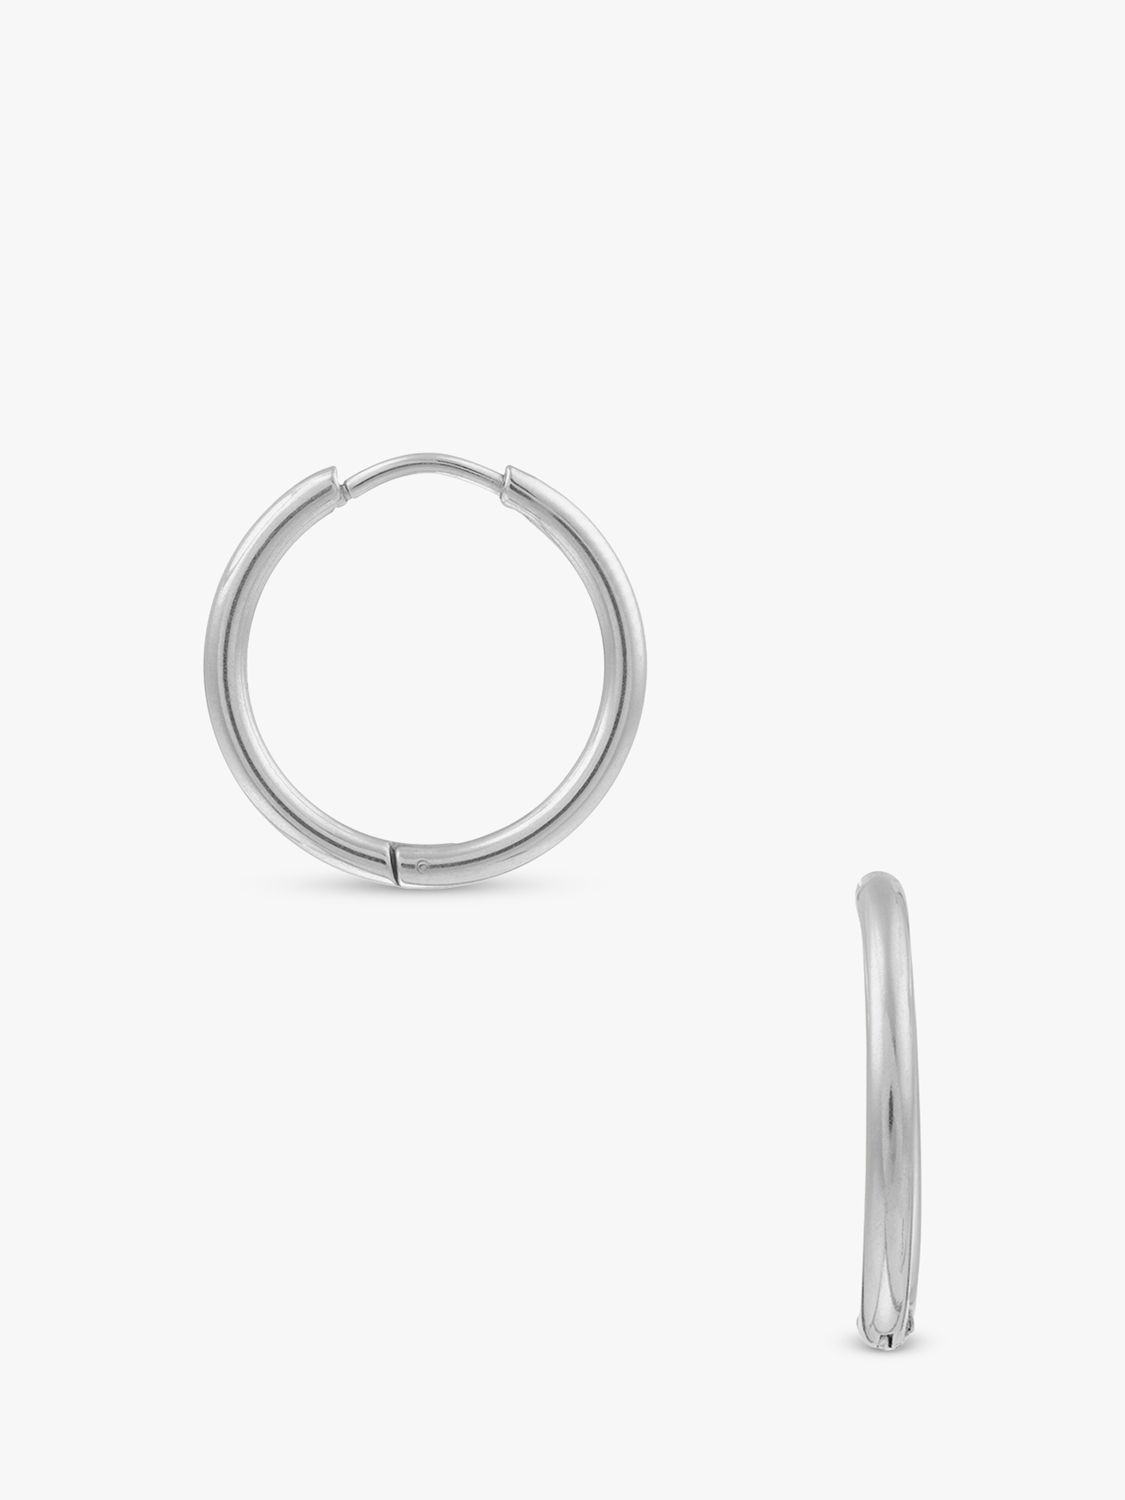 Buy Orelia Luxe Mid Size Hoop Earrings, Silver Online at johnlewis.com